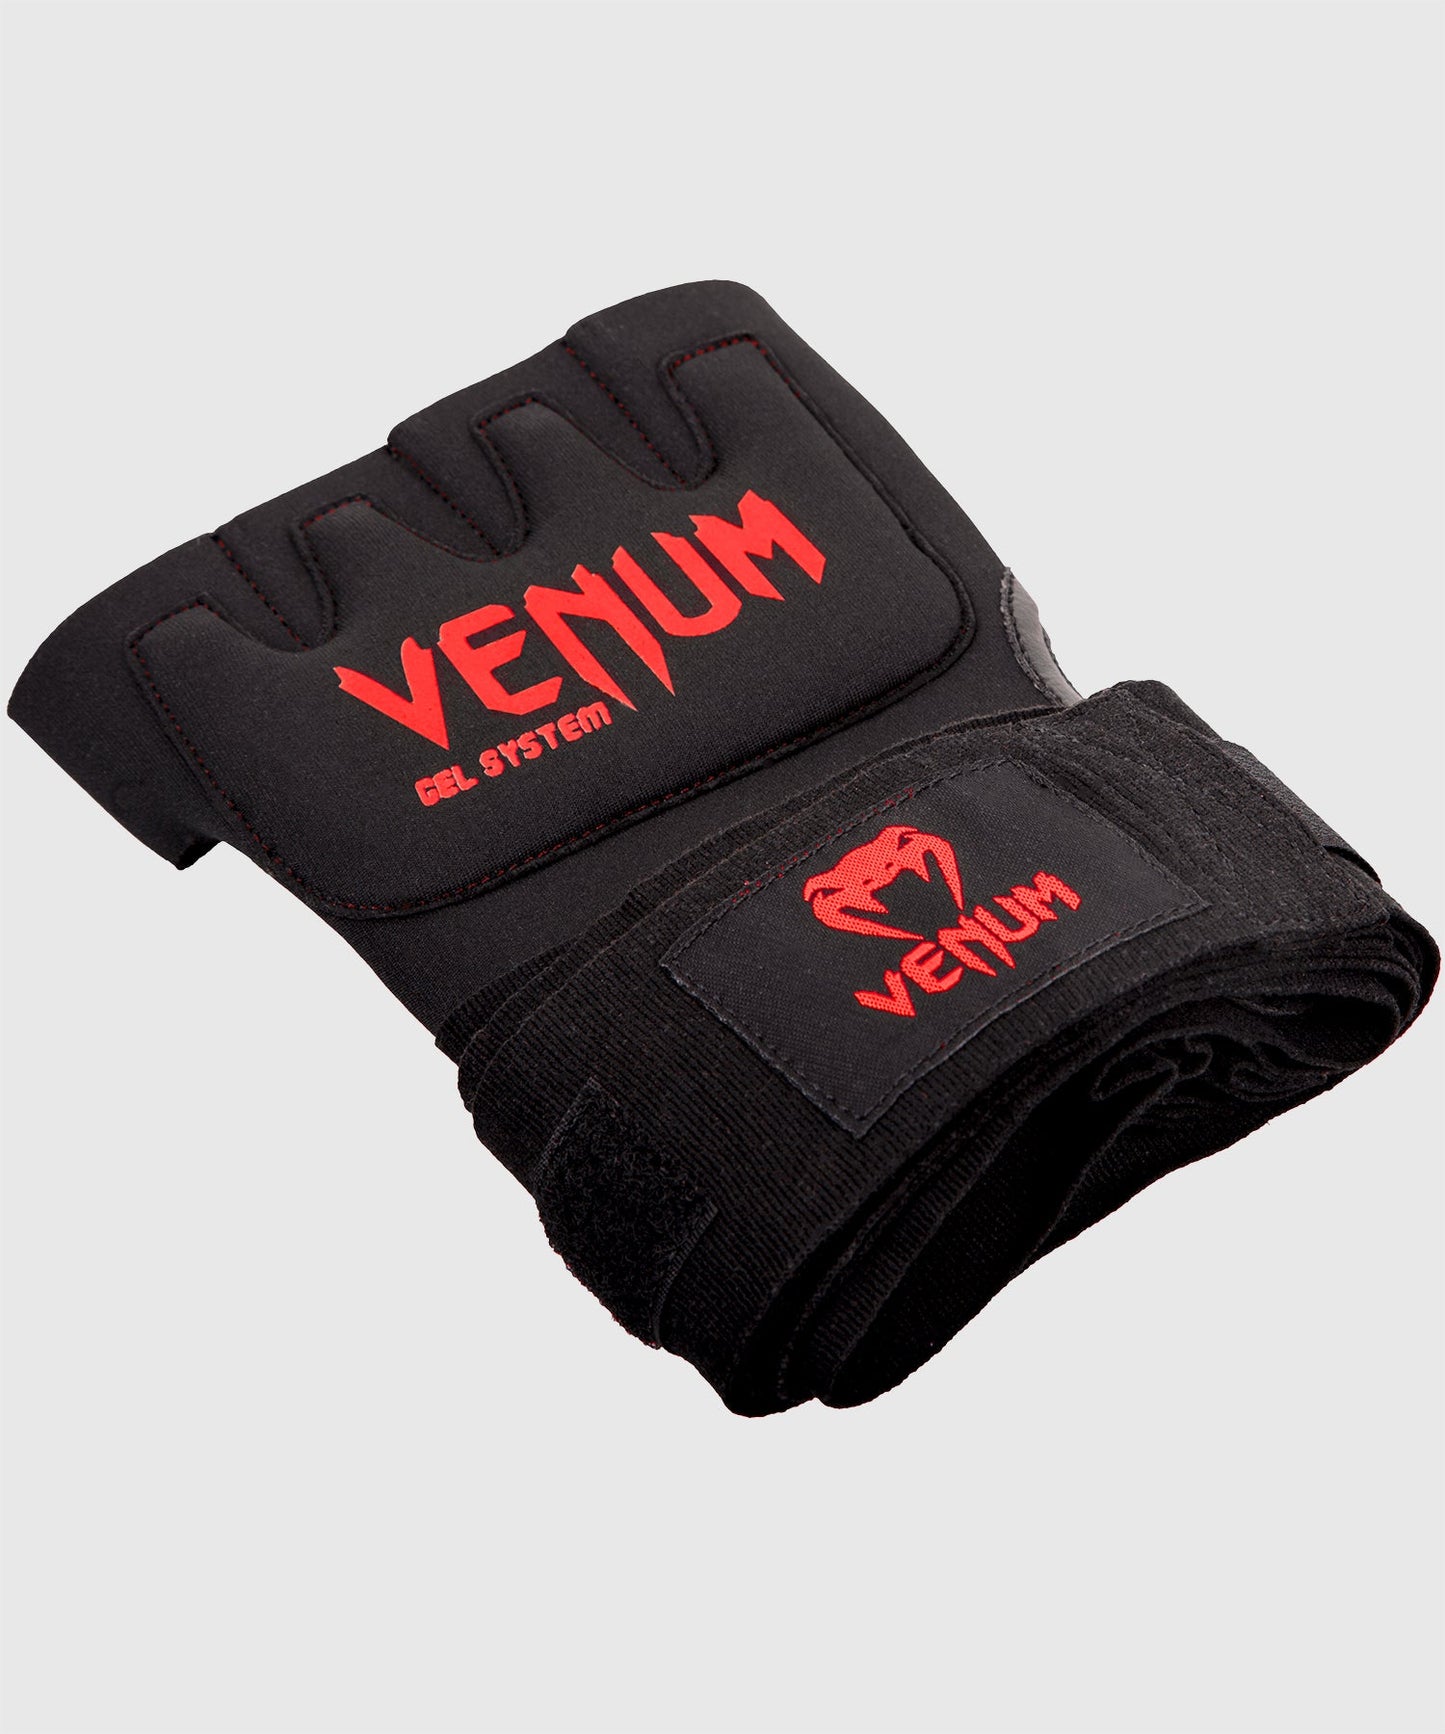 Venum Gel Kontact Handschuh Wraps - Schwarz/Rot